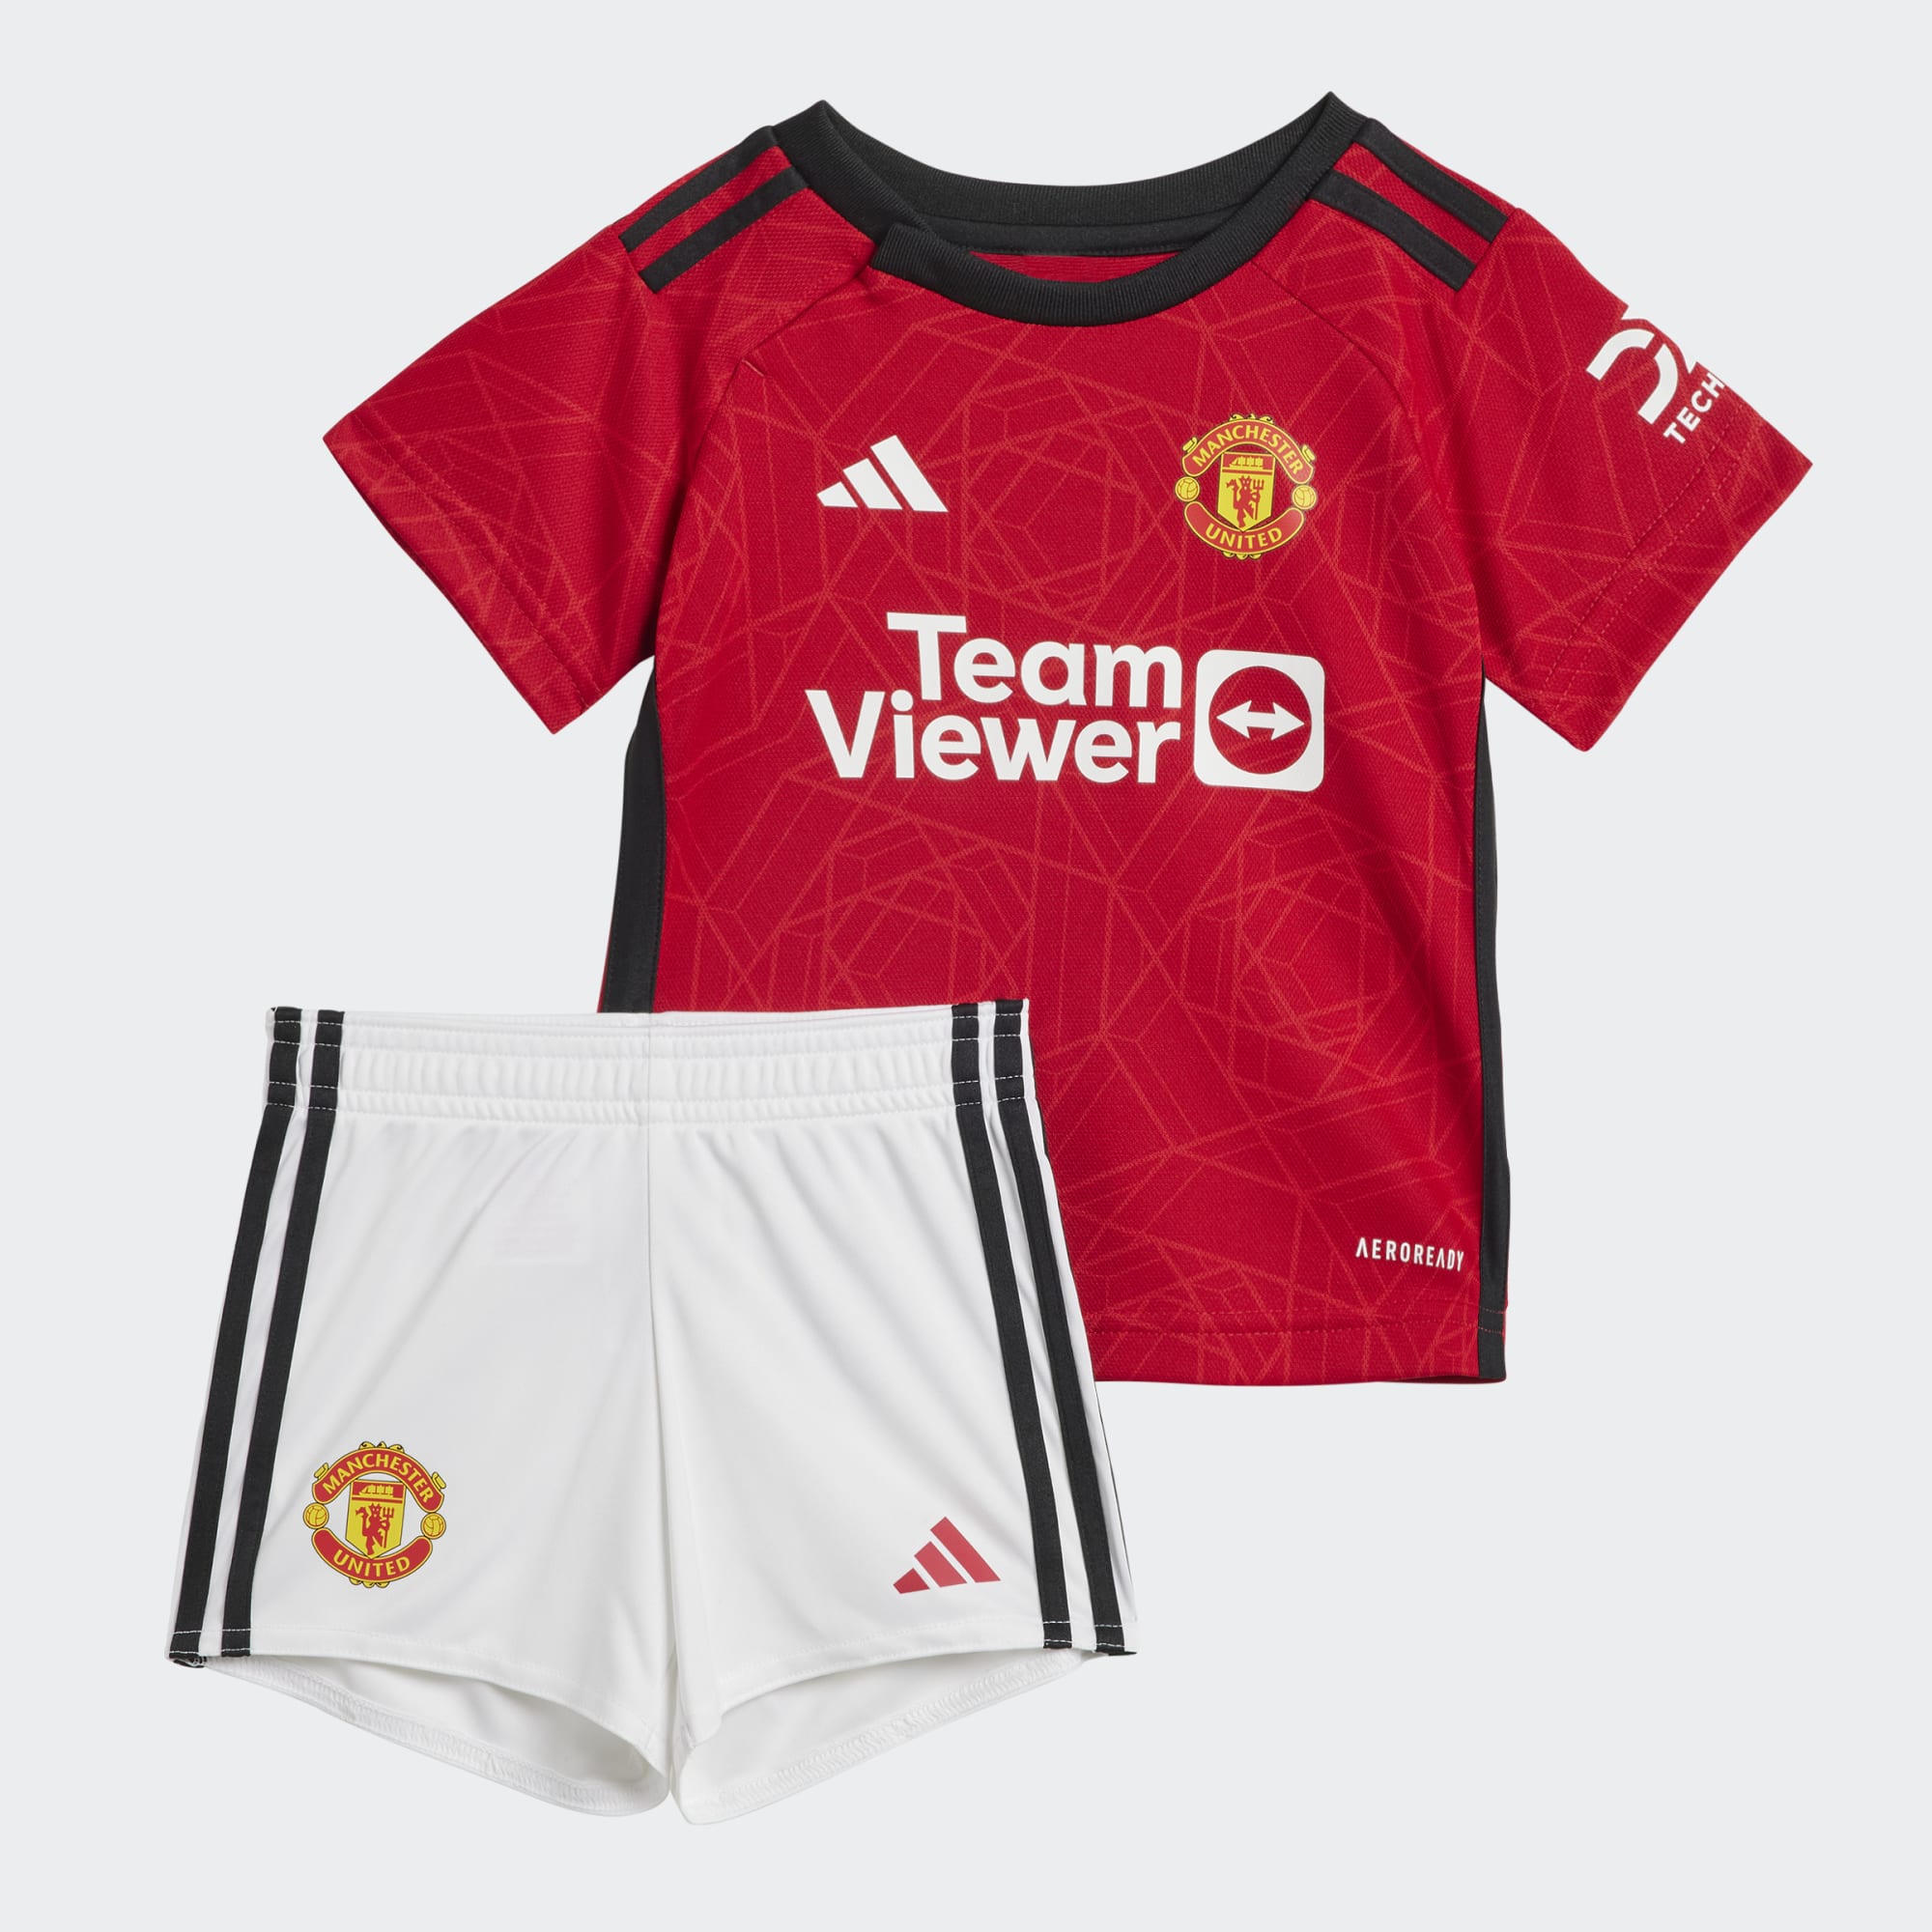 Manchester United barna sett - blusa og shorts